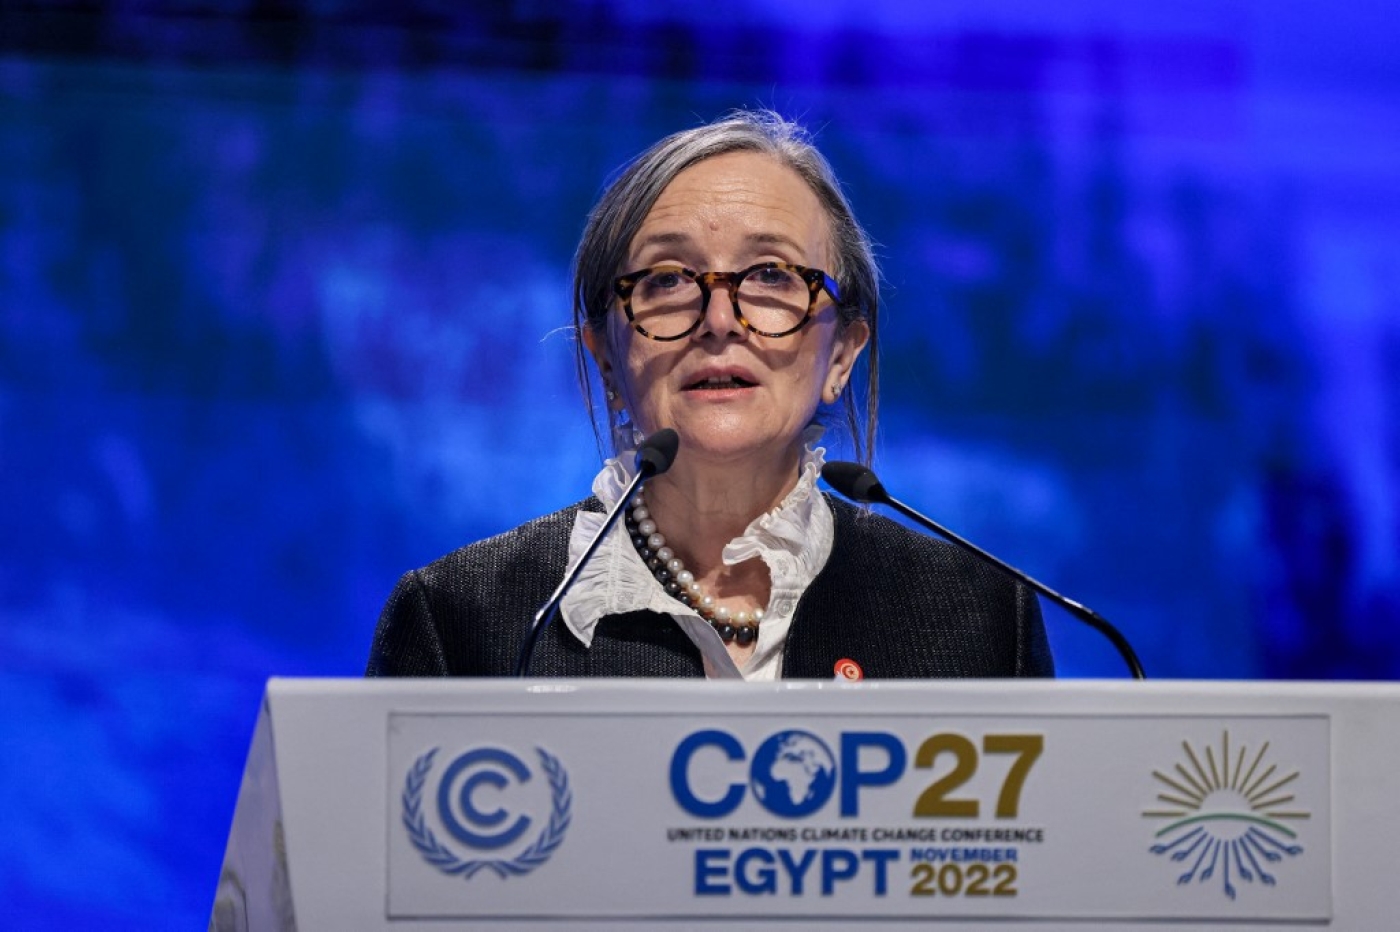 La Première ministre tunisienne Najla Bouden prononce un discours lors de la COP27 à Charm el-Cheikh en Egypte, le 8 novembre 2022 (AFP/Ahmad Gharabli)